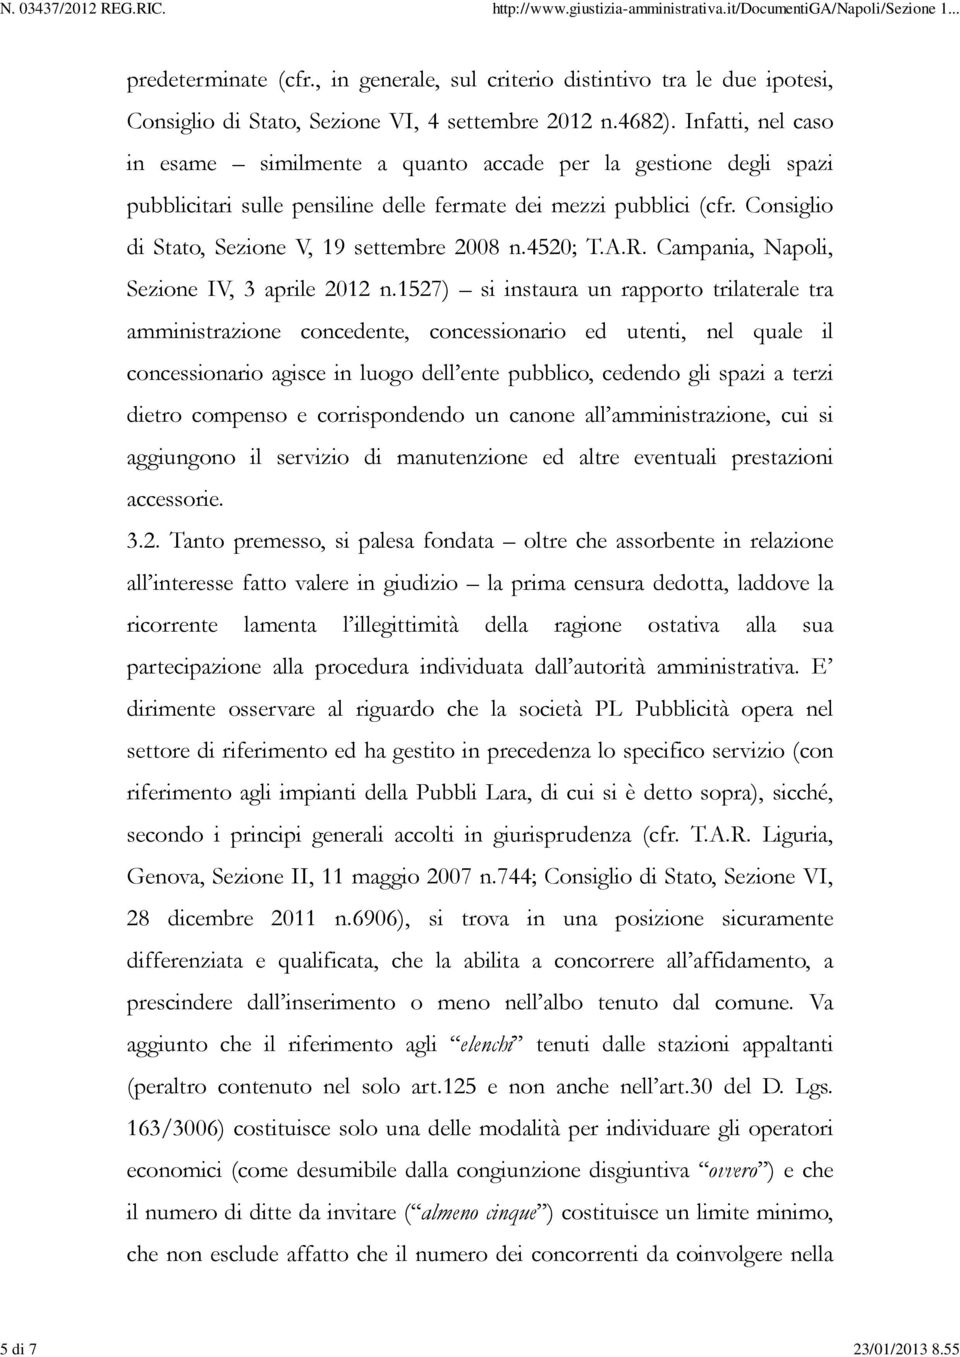 Consiglio di Stato, Sezione V, 19 settembre 2008 n.4520; T.A.R. Campania, Napoli, Sezione IV, 3 aprile 2012 n.